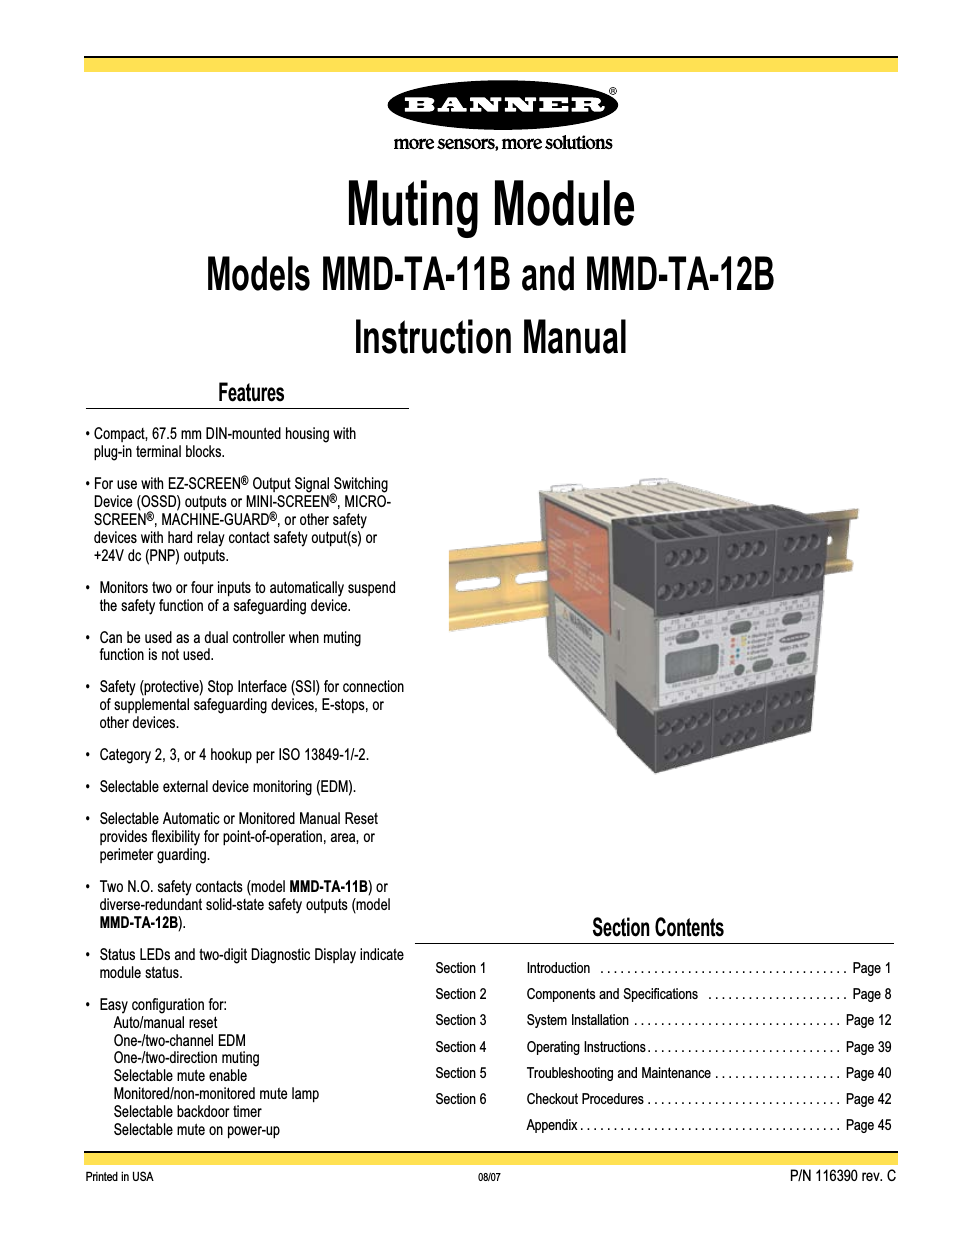 MMD-TA-12B Muting Modules